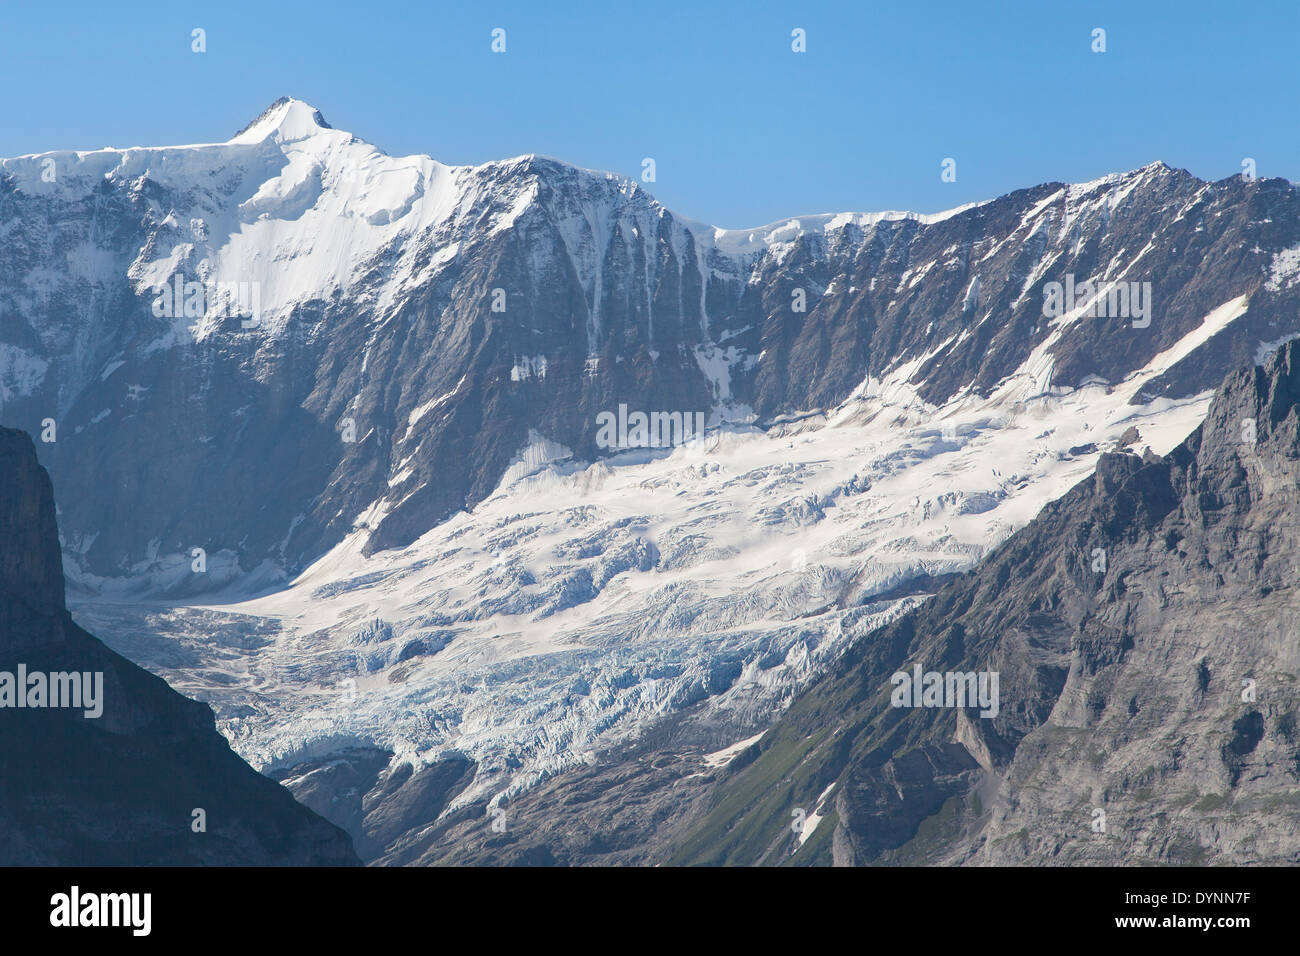 Fiescherhorn peak and Ischmeer glacier in Grindelwald, Swiss Alps. Stock Photo